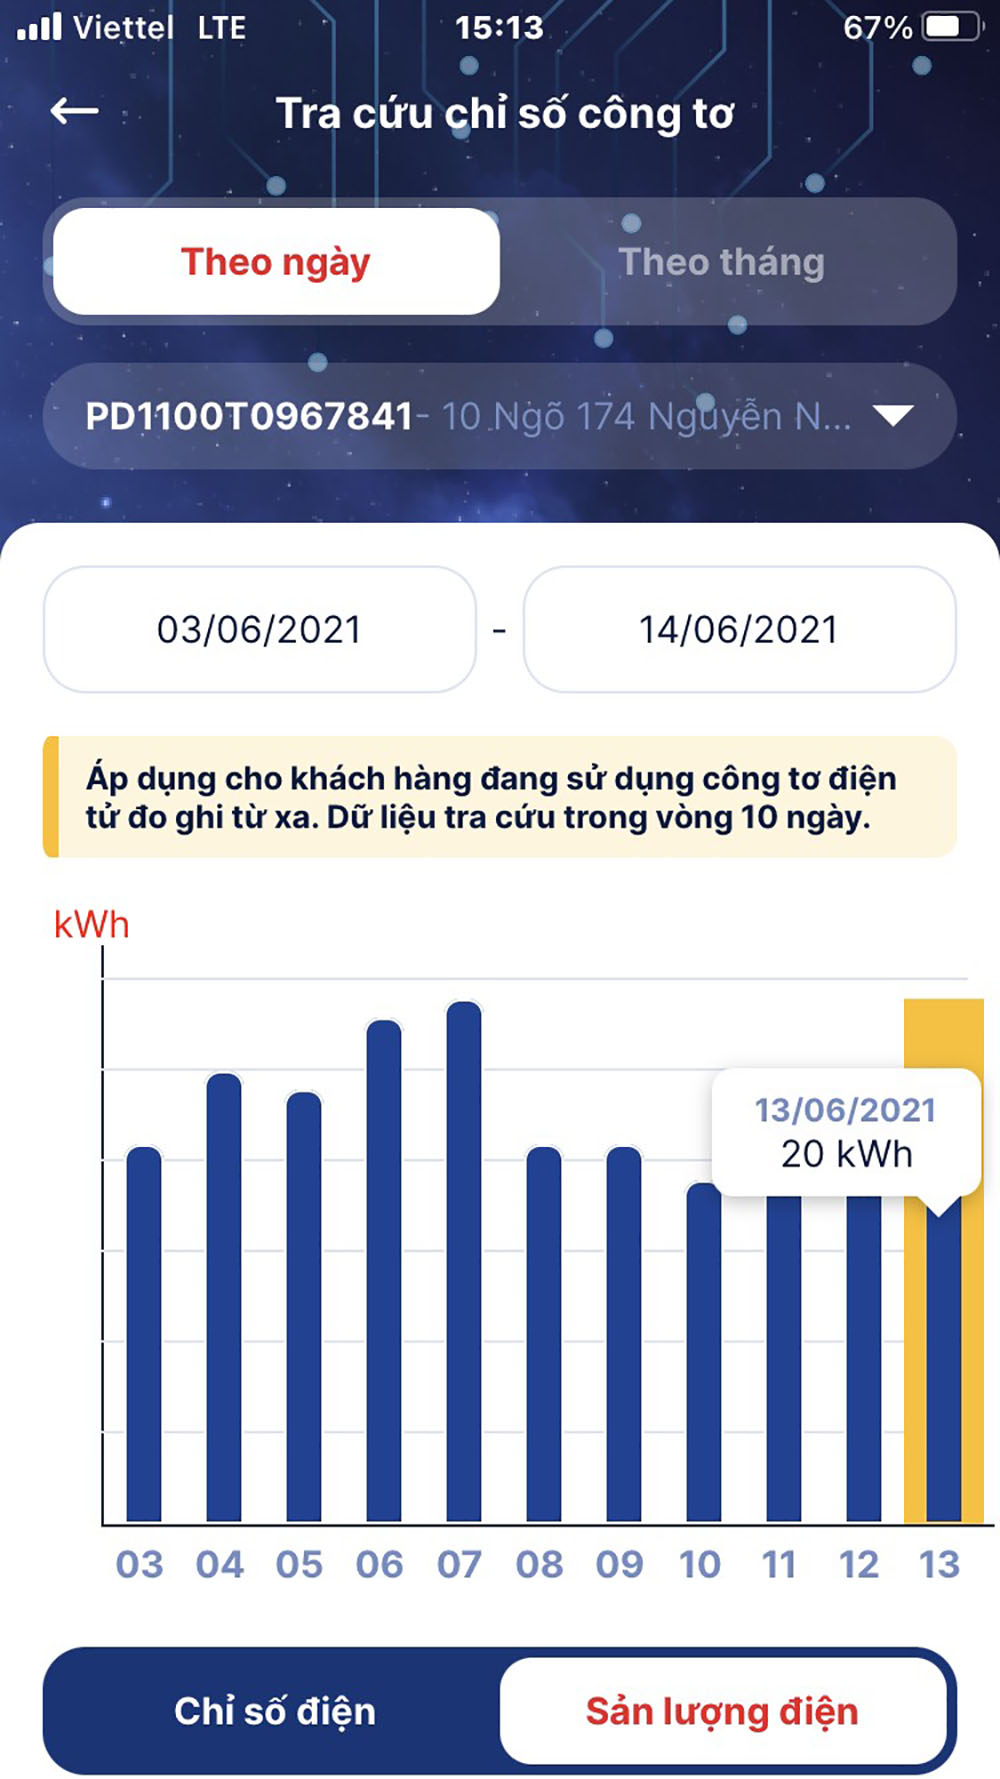 Tính năng “Tra cứu chỉ số công tơ” trên App EVNHANOI cho biết lượng điện tiêu thụ hằng ngày